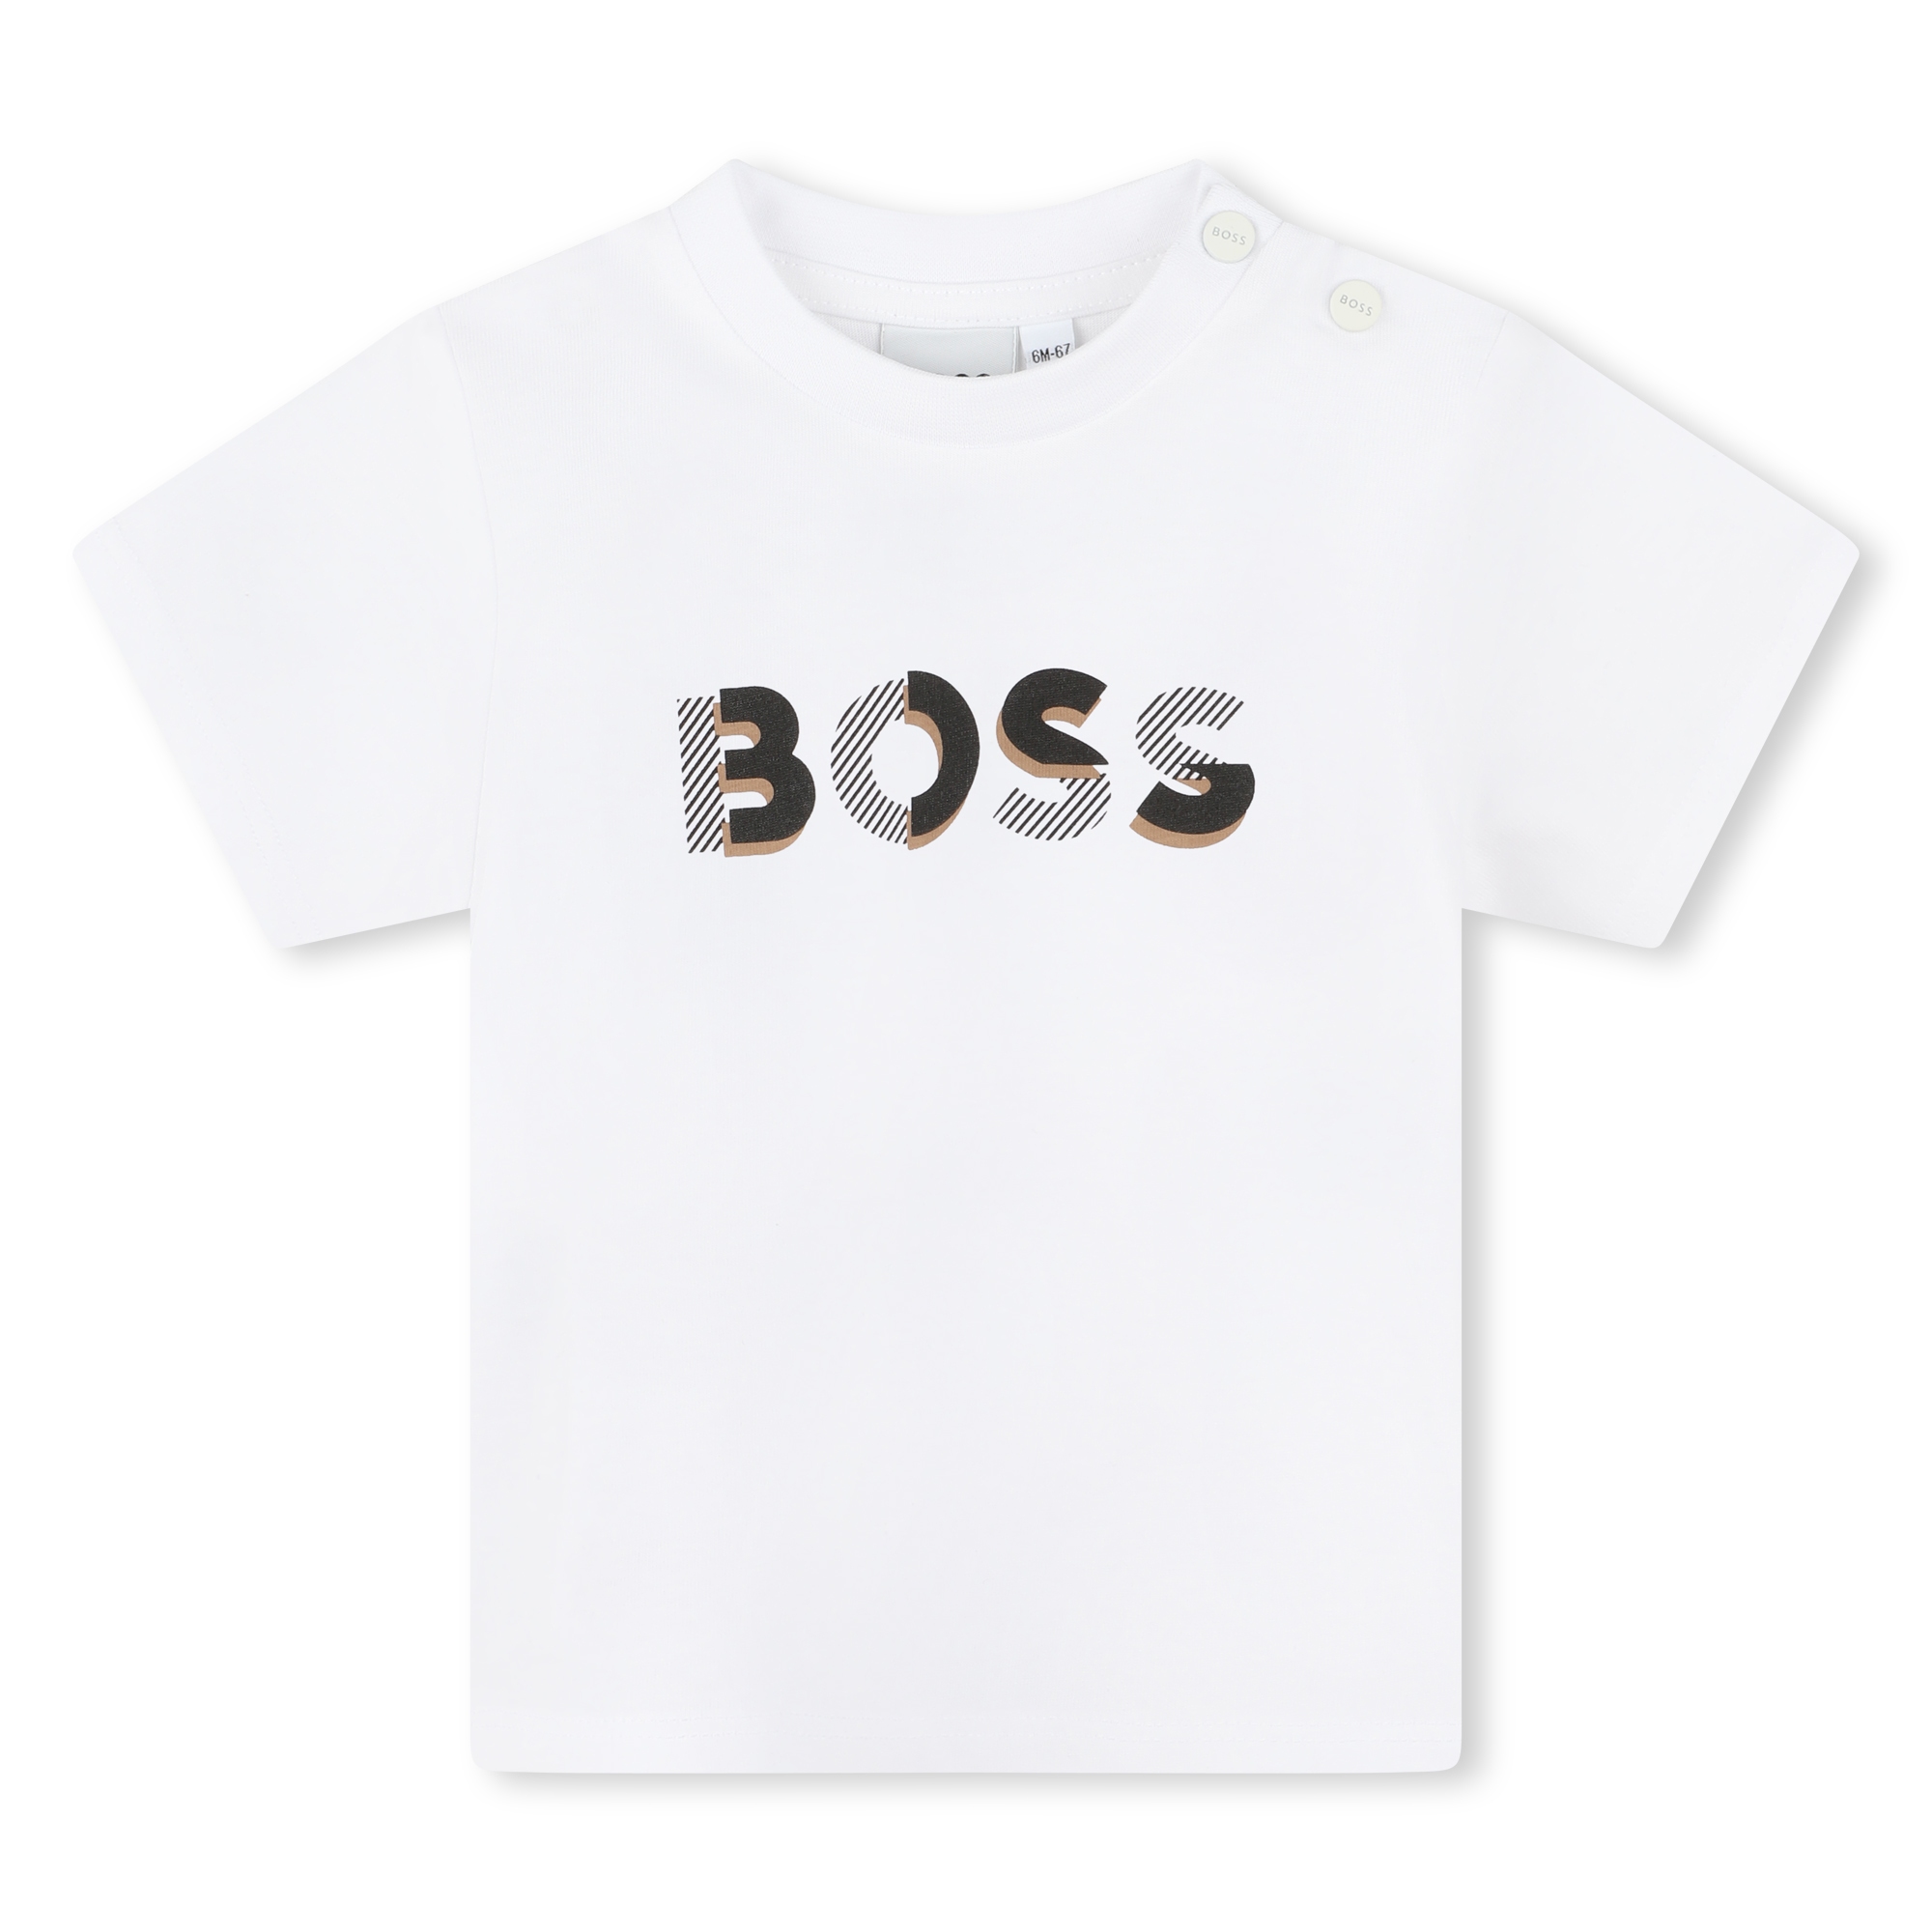 Press-stud cotton T-shirt BOSS for BOY